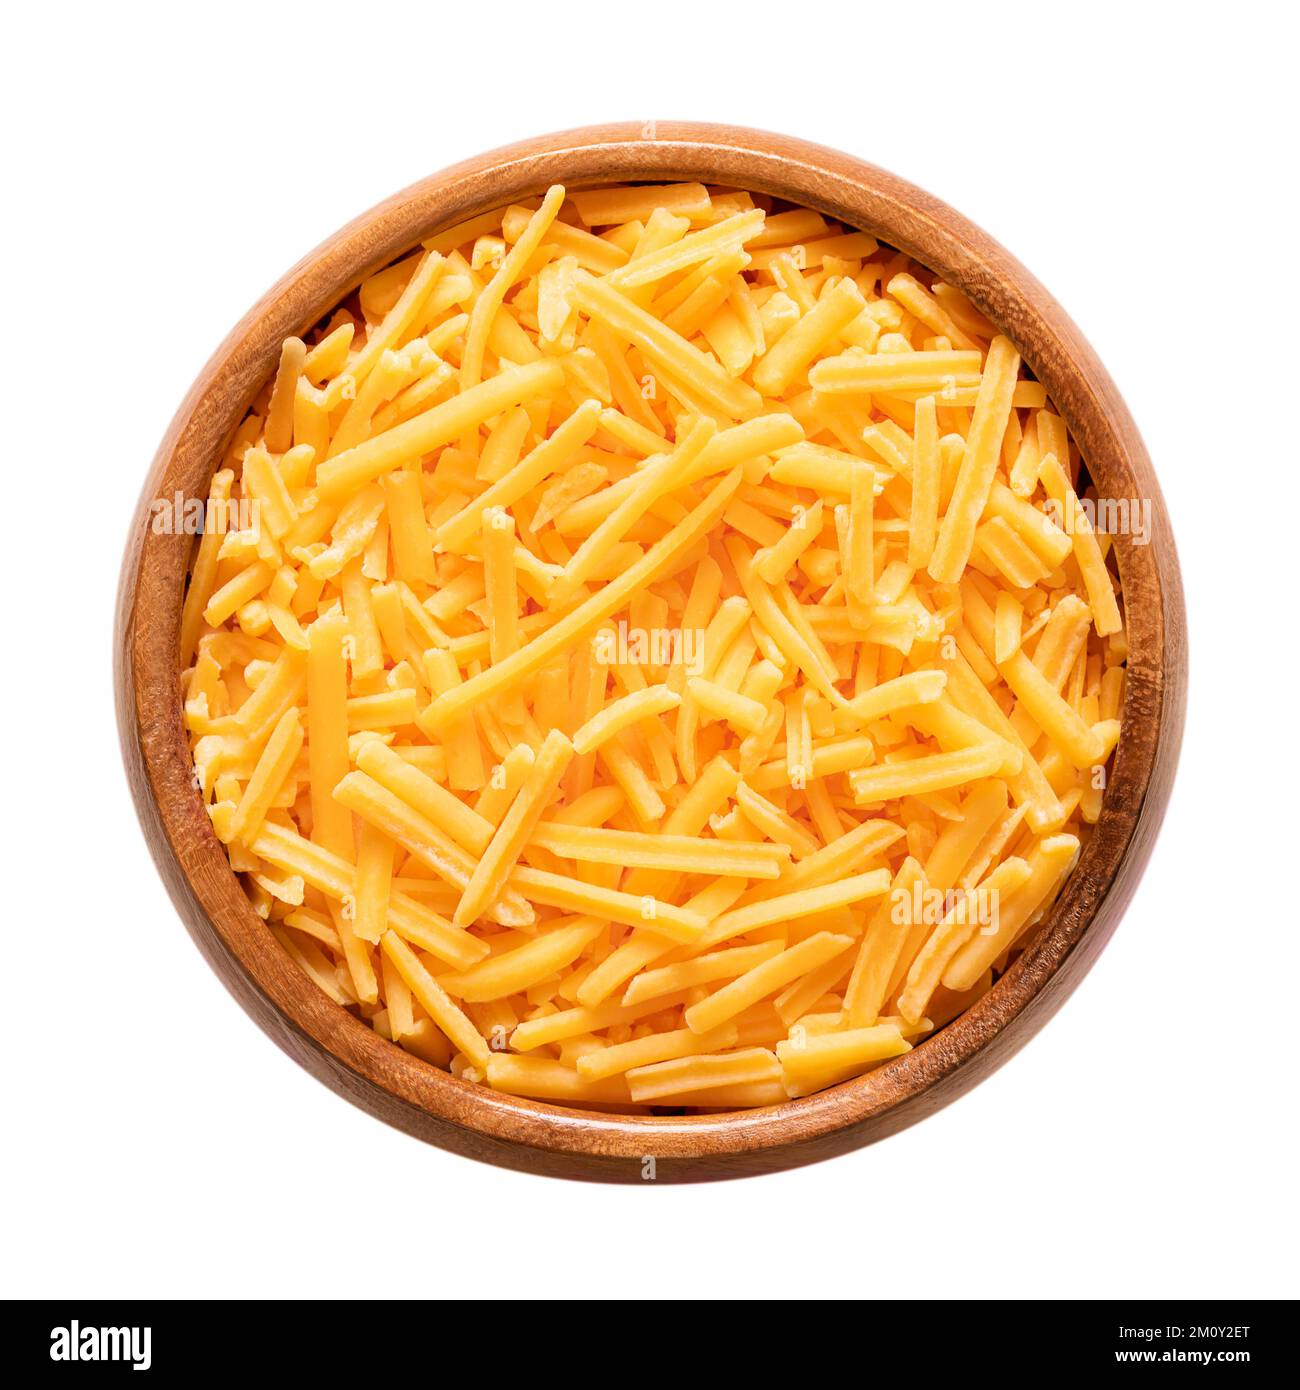 Zerkleinerter Cheddar-Käse in einer Holzschüssel. Geriebener Naturkäse, pikant, orange gefärbt mit Annatto, eine natürliche Lebensmittelfarbe. Stockfoto